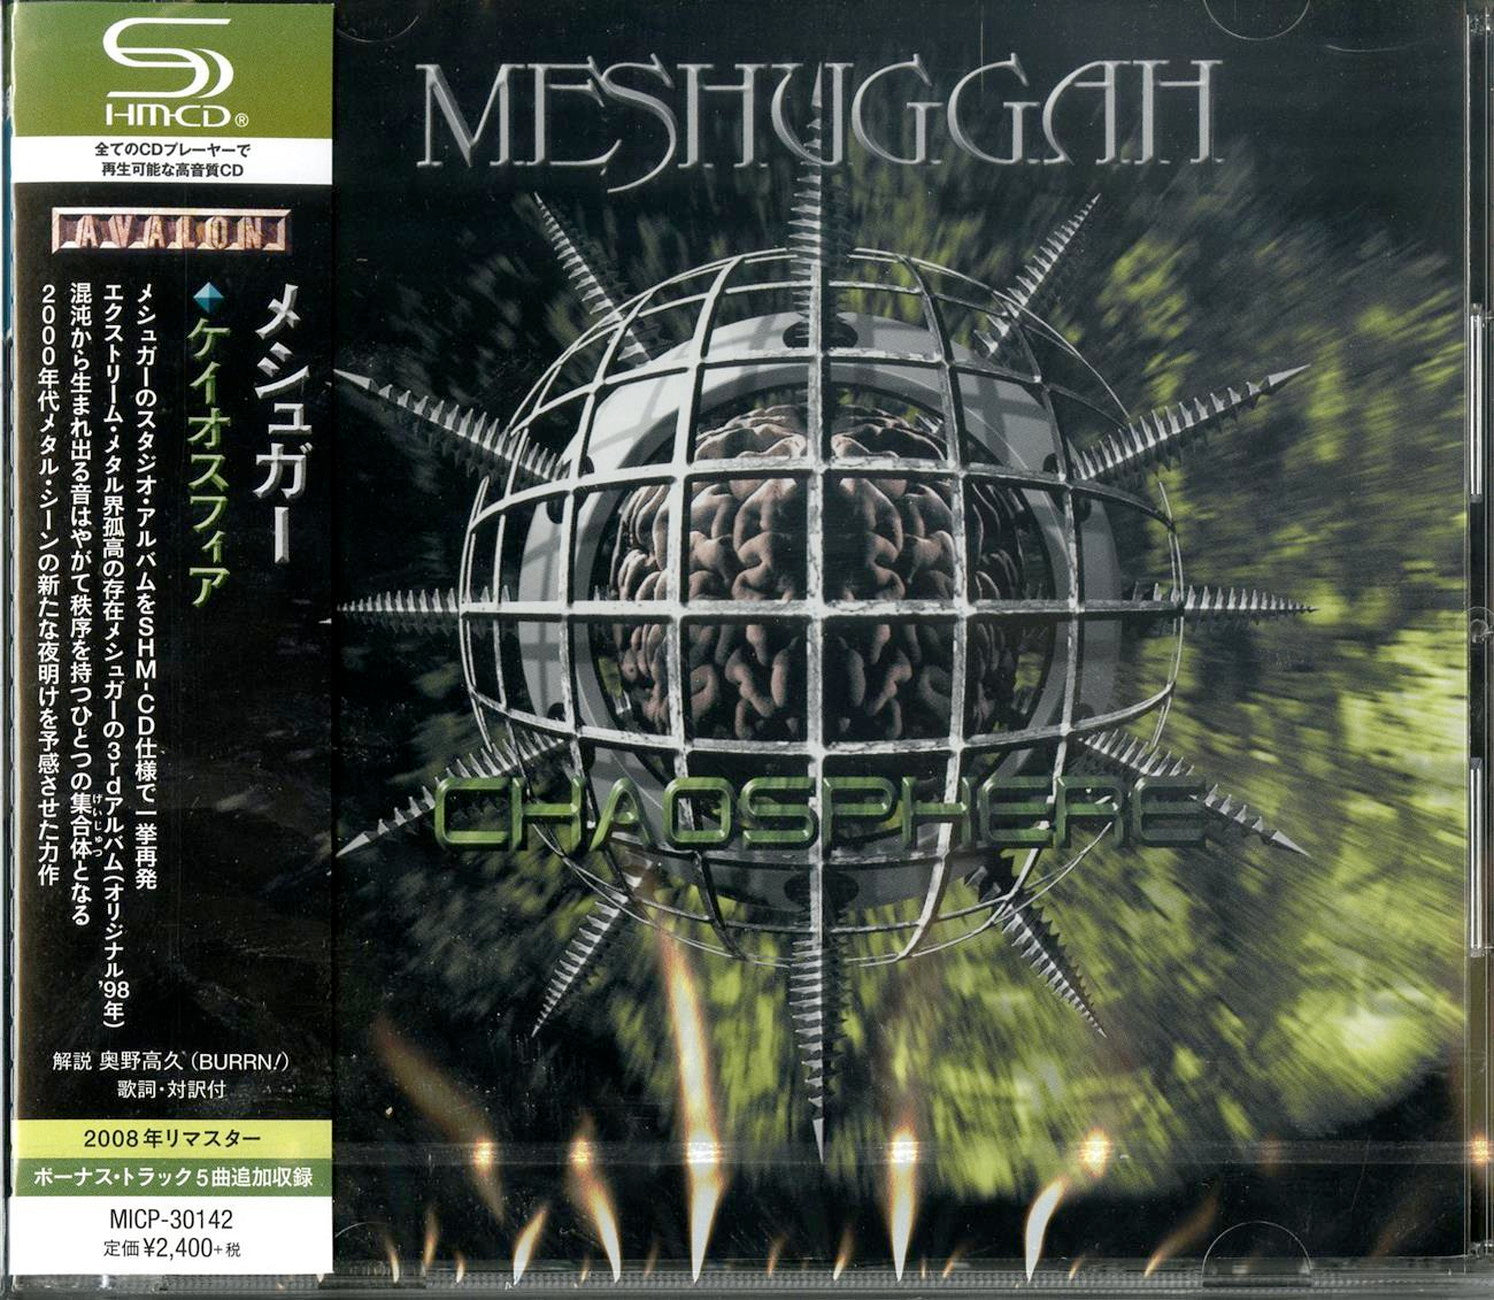 Meshuggah - Chaosphere - Japan SHM-CD – CDs Vinyl Japan Store